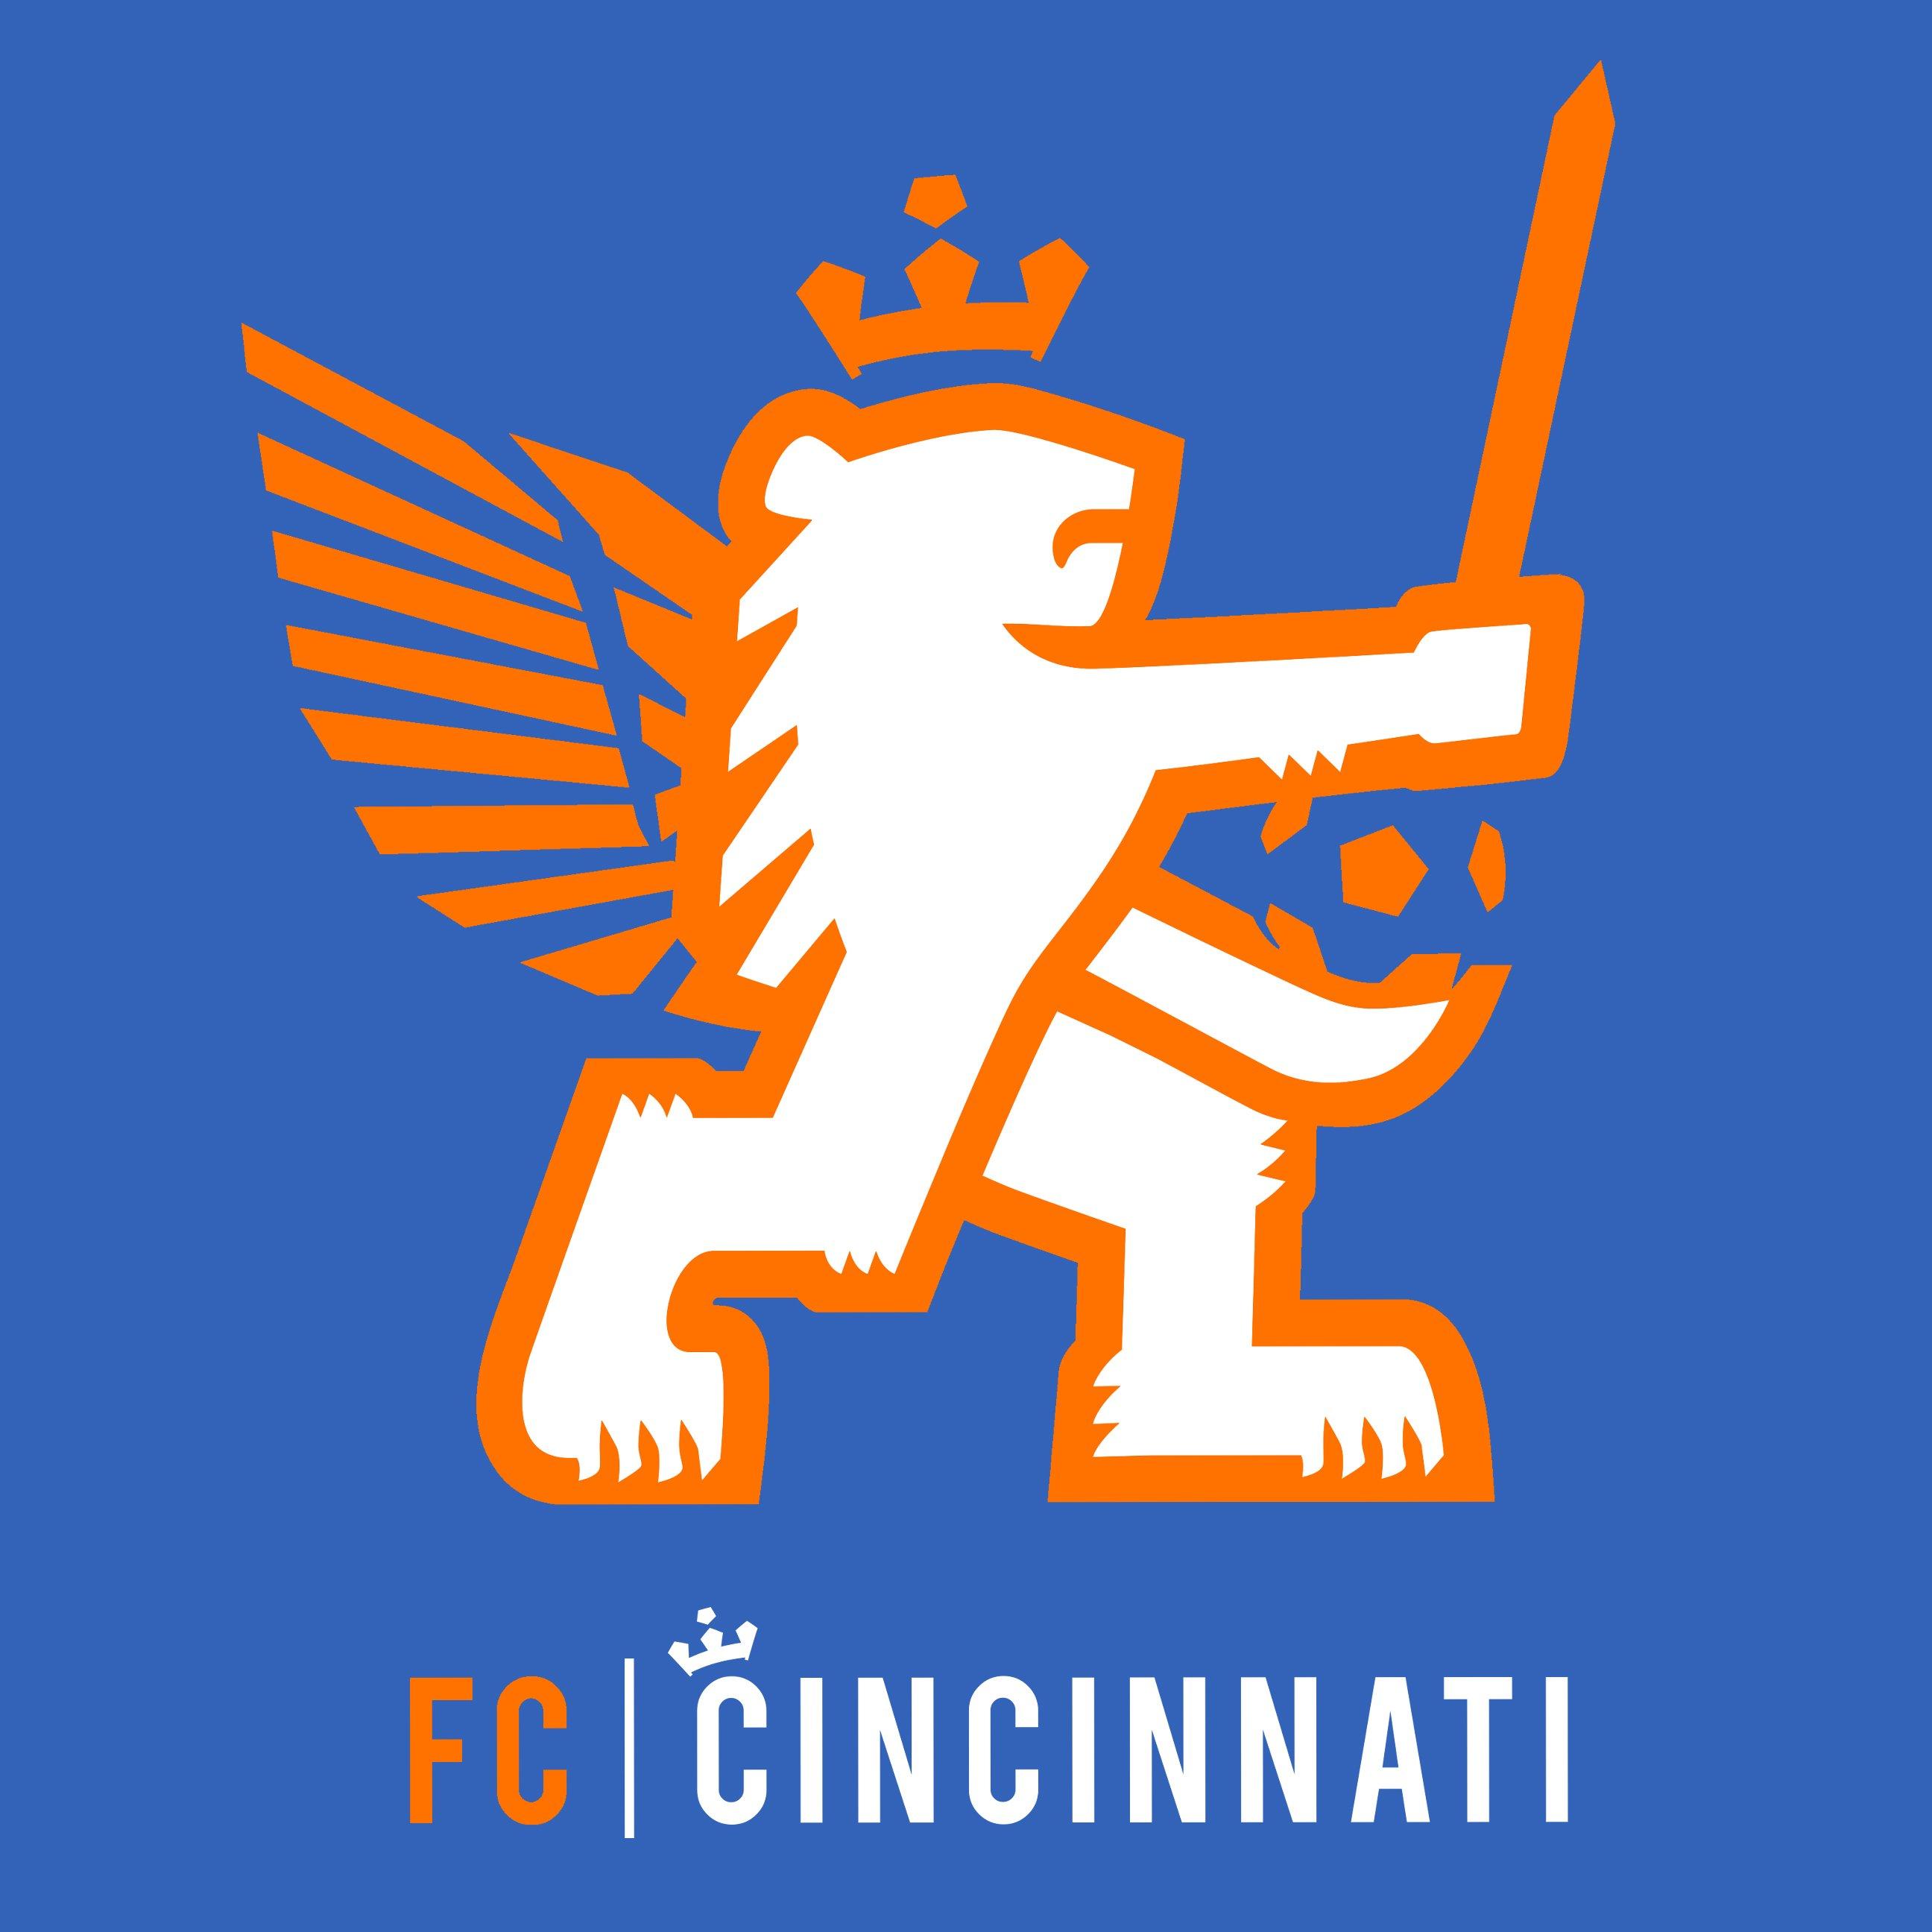 FC Cincinnati wallpaper